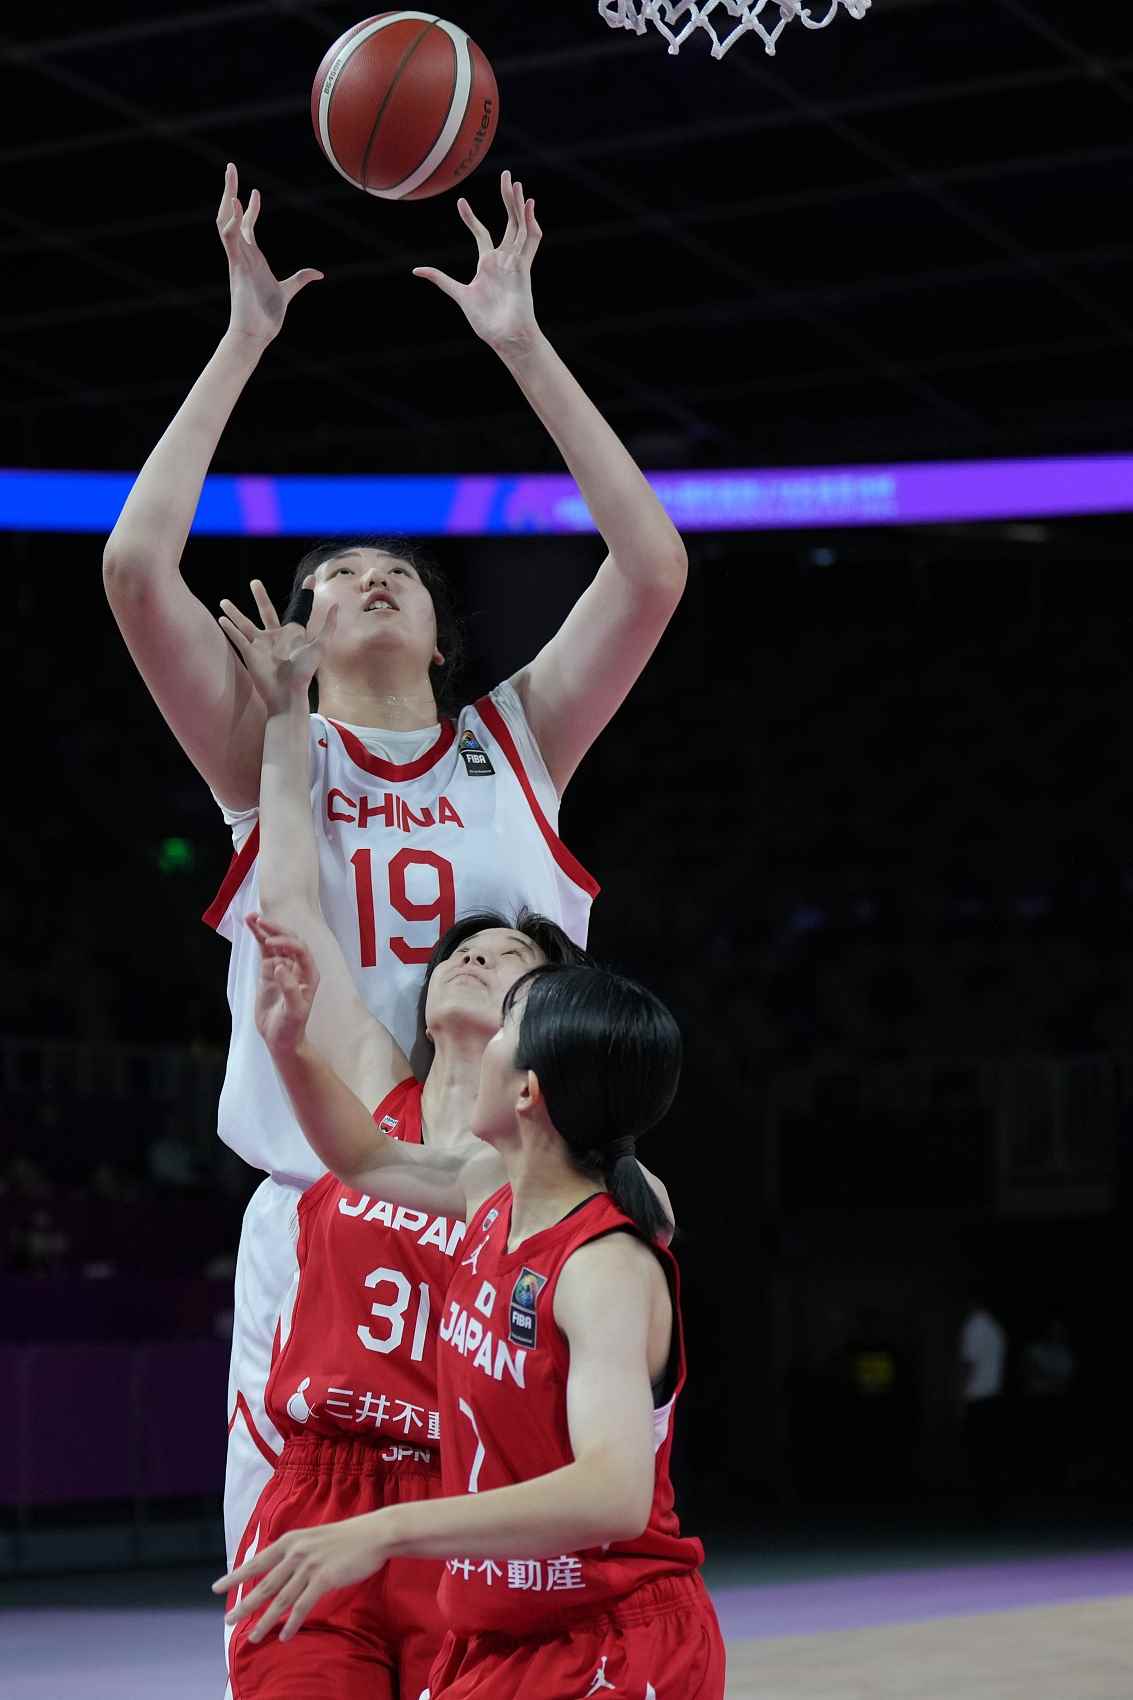 段冉:张子宇的统治力在同年龄段的比赛中是顶级的 期待她进WNBA